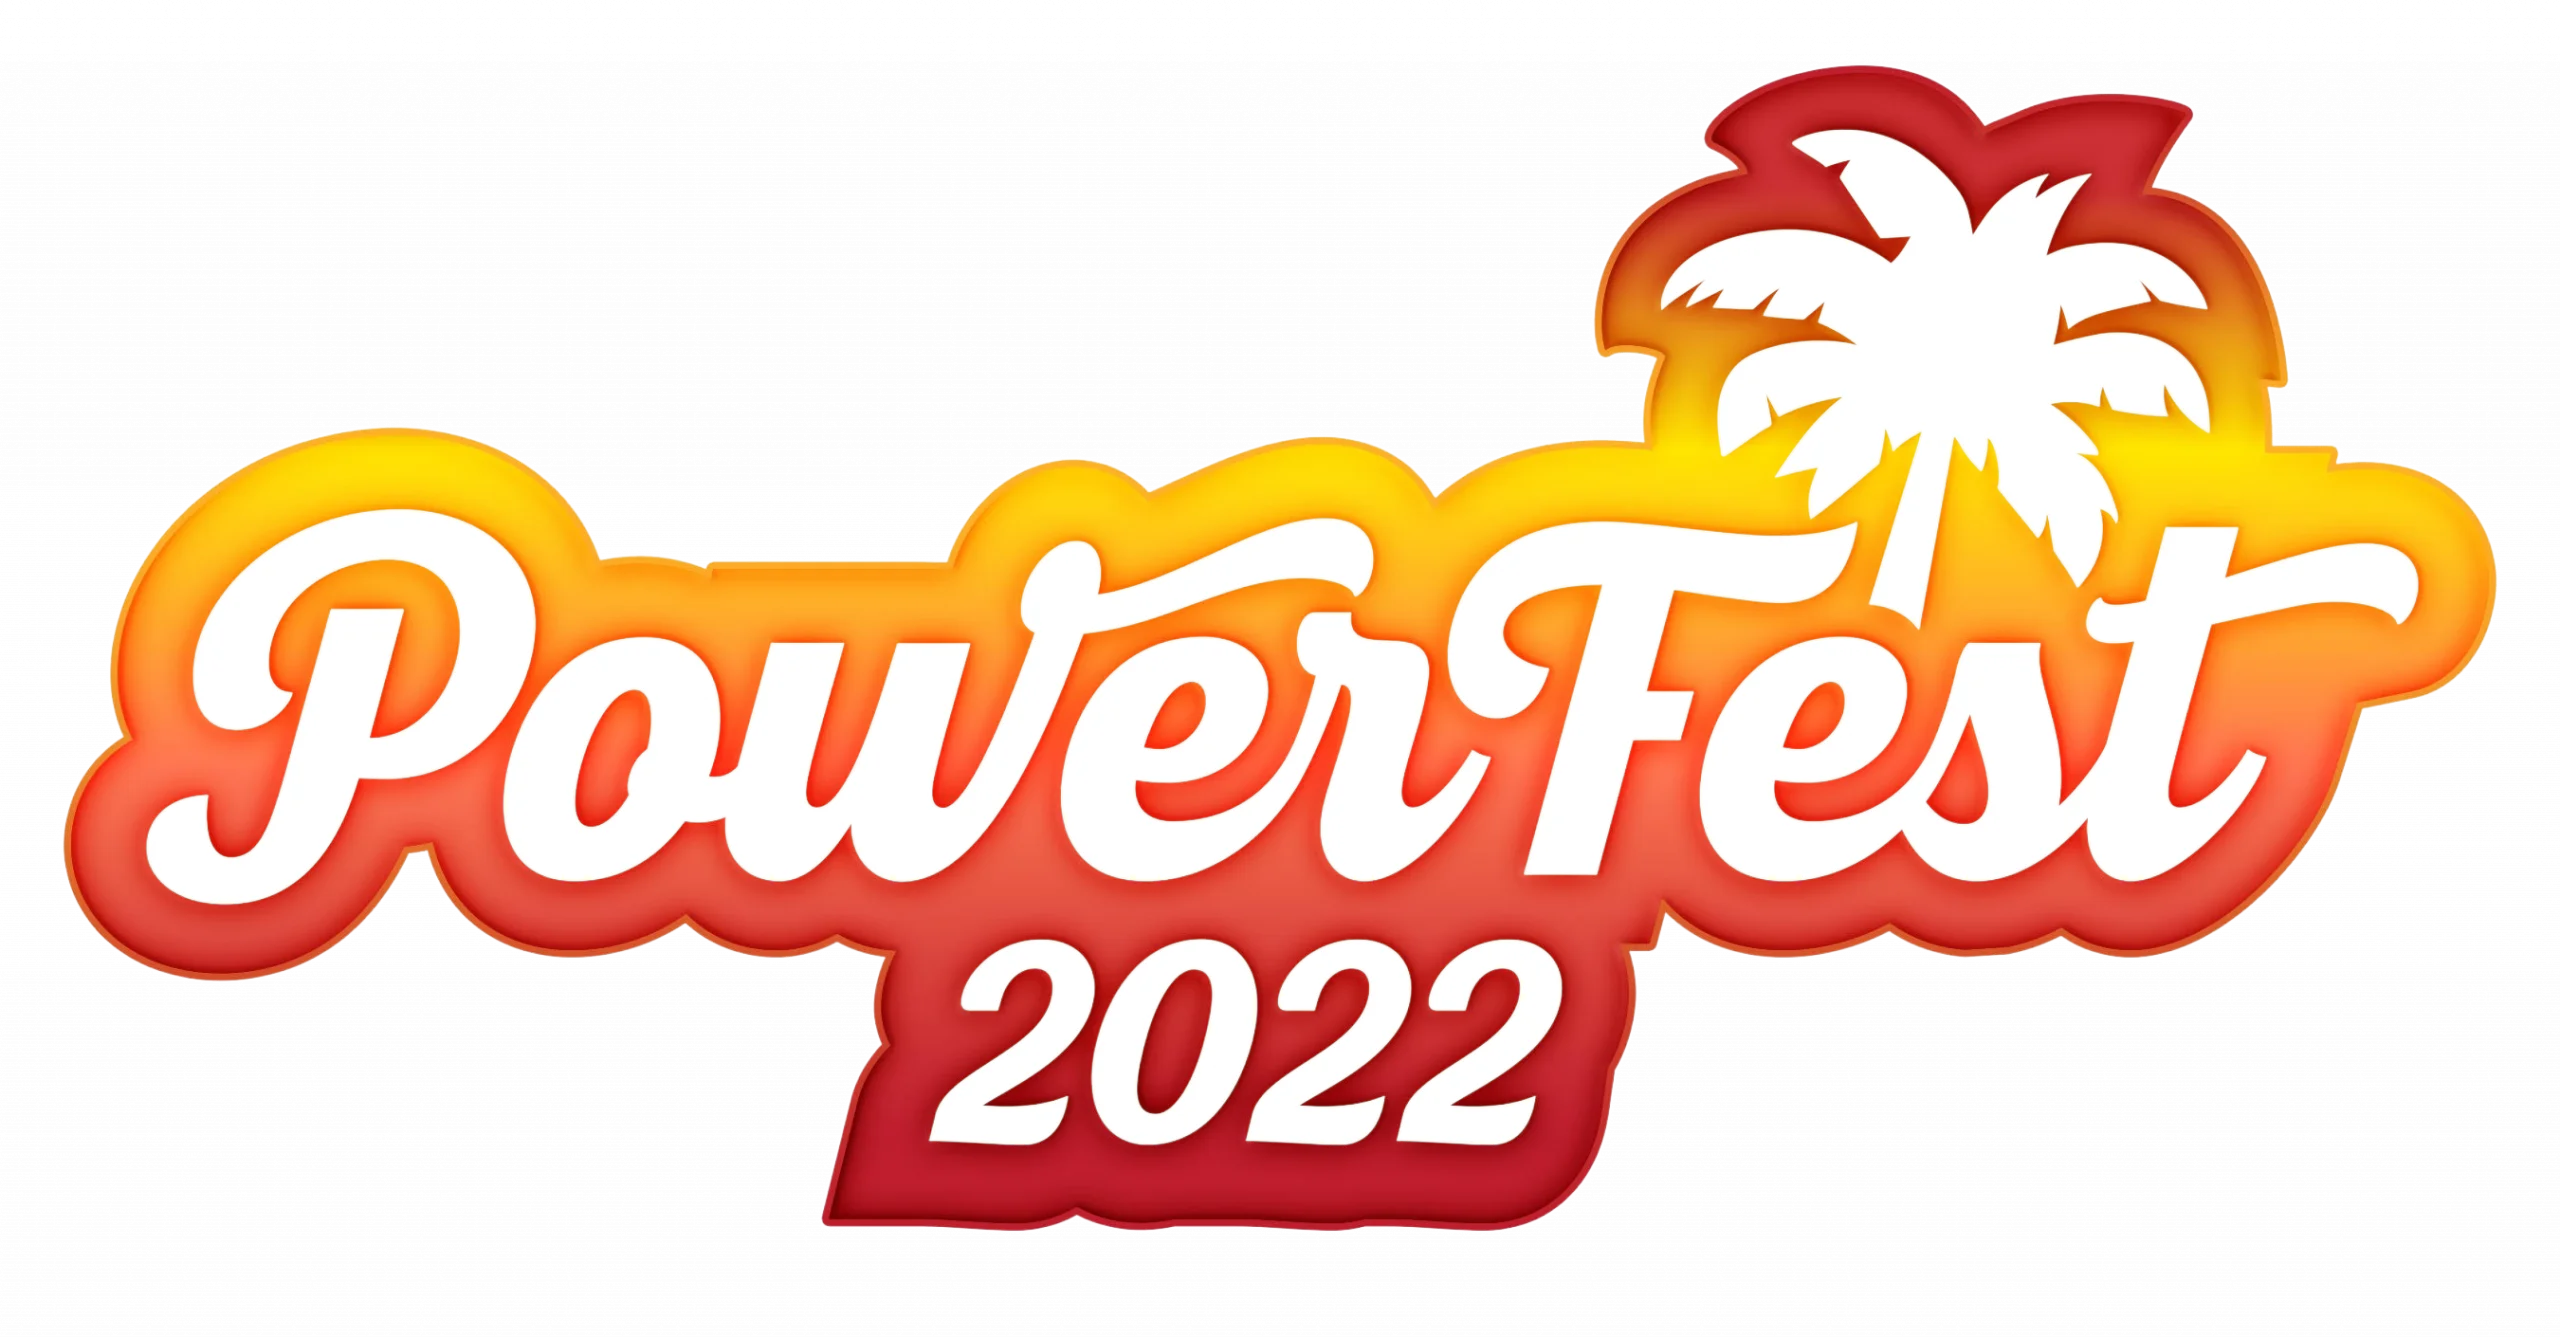 Powerfest_logo-small